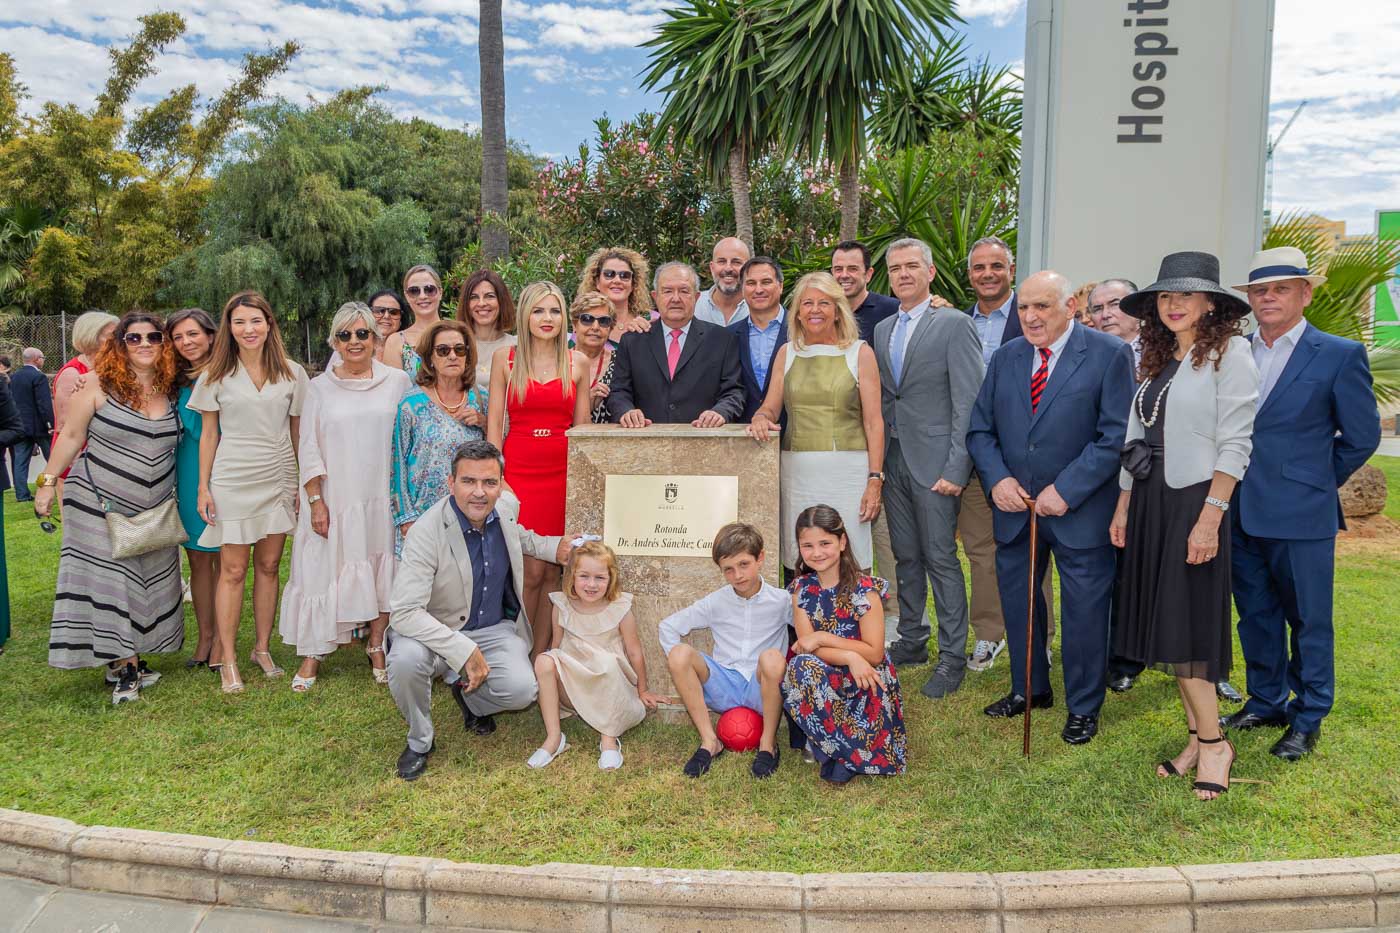 El Ayuntamiento asigna el nombre del Doctor Andrés Sánchez Cantos a la rotonda ubicada a la entrada del Hospital Costa del Sol en homenaje a “un referente como médico y como embajador de Marbella”